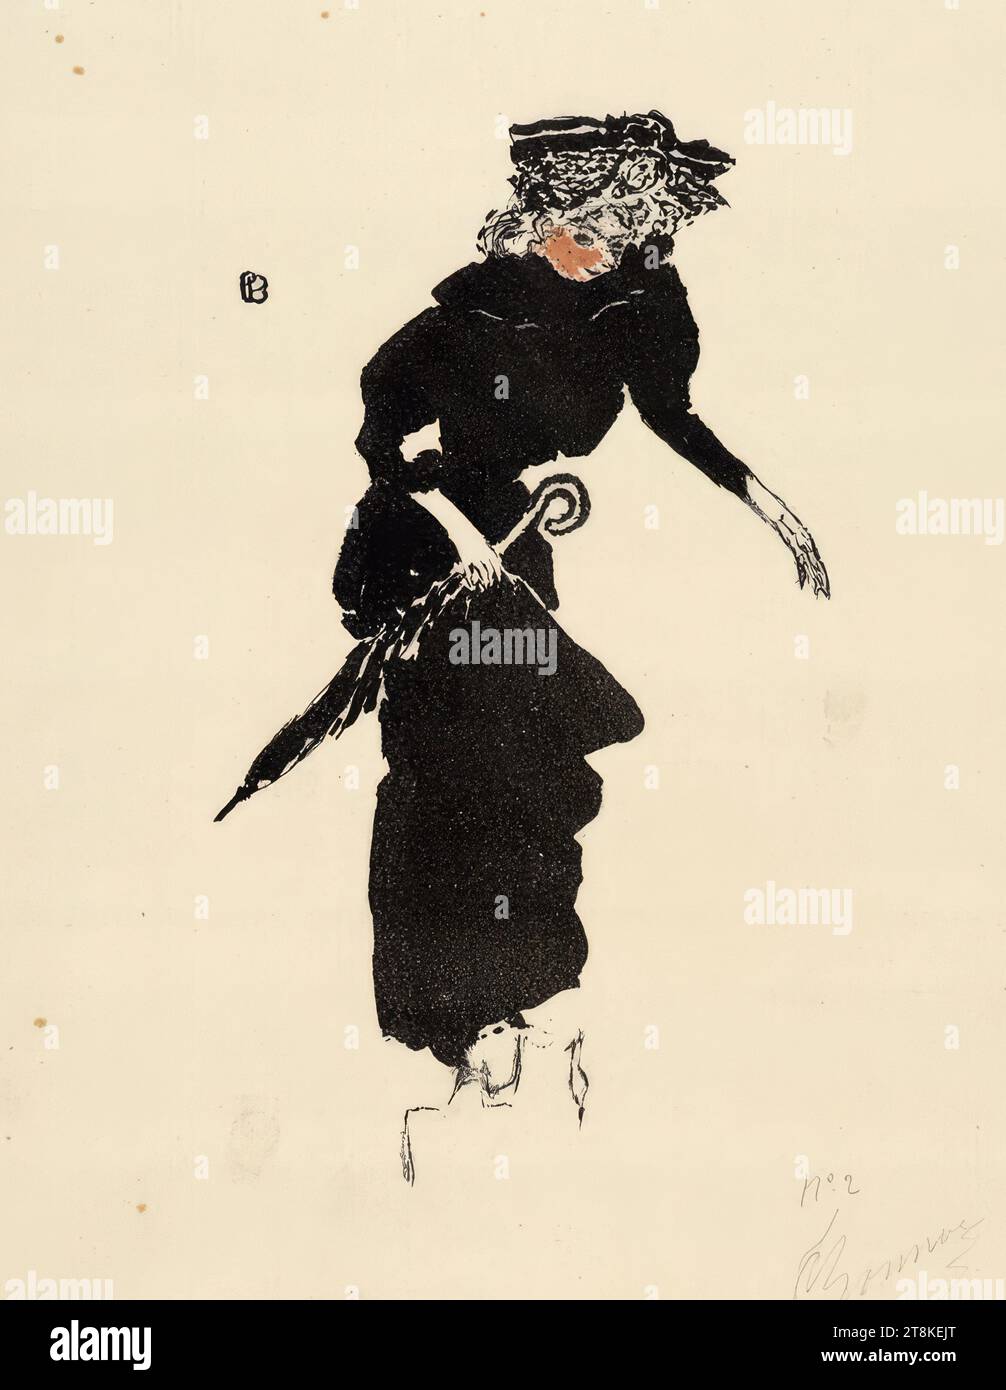 Lady with an umbrella, Album de la Revue blanche; édité par l'Estampe Originale; Paris 1895, Pierre Bonnard, Fontenay-aux-Roses 1867 - 1947 Le Cannet, 1894, print, color lithograph, 32.2 x 25.2 cm Stock Photo